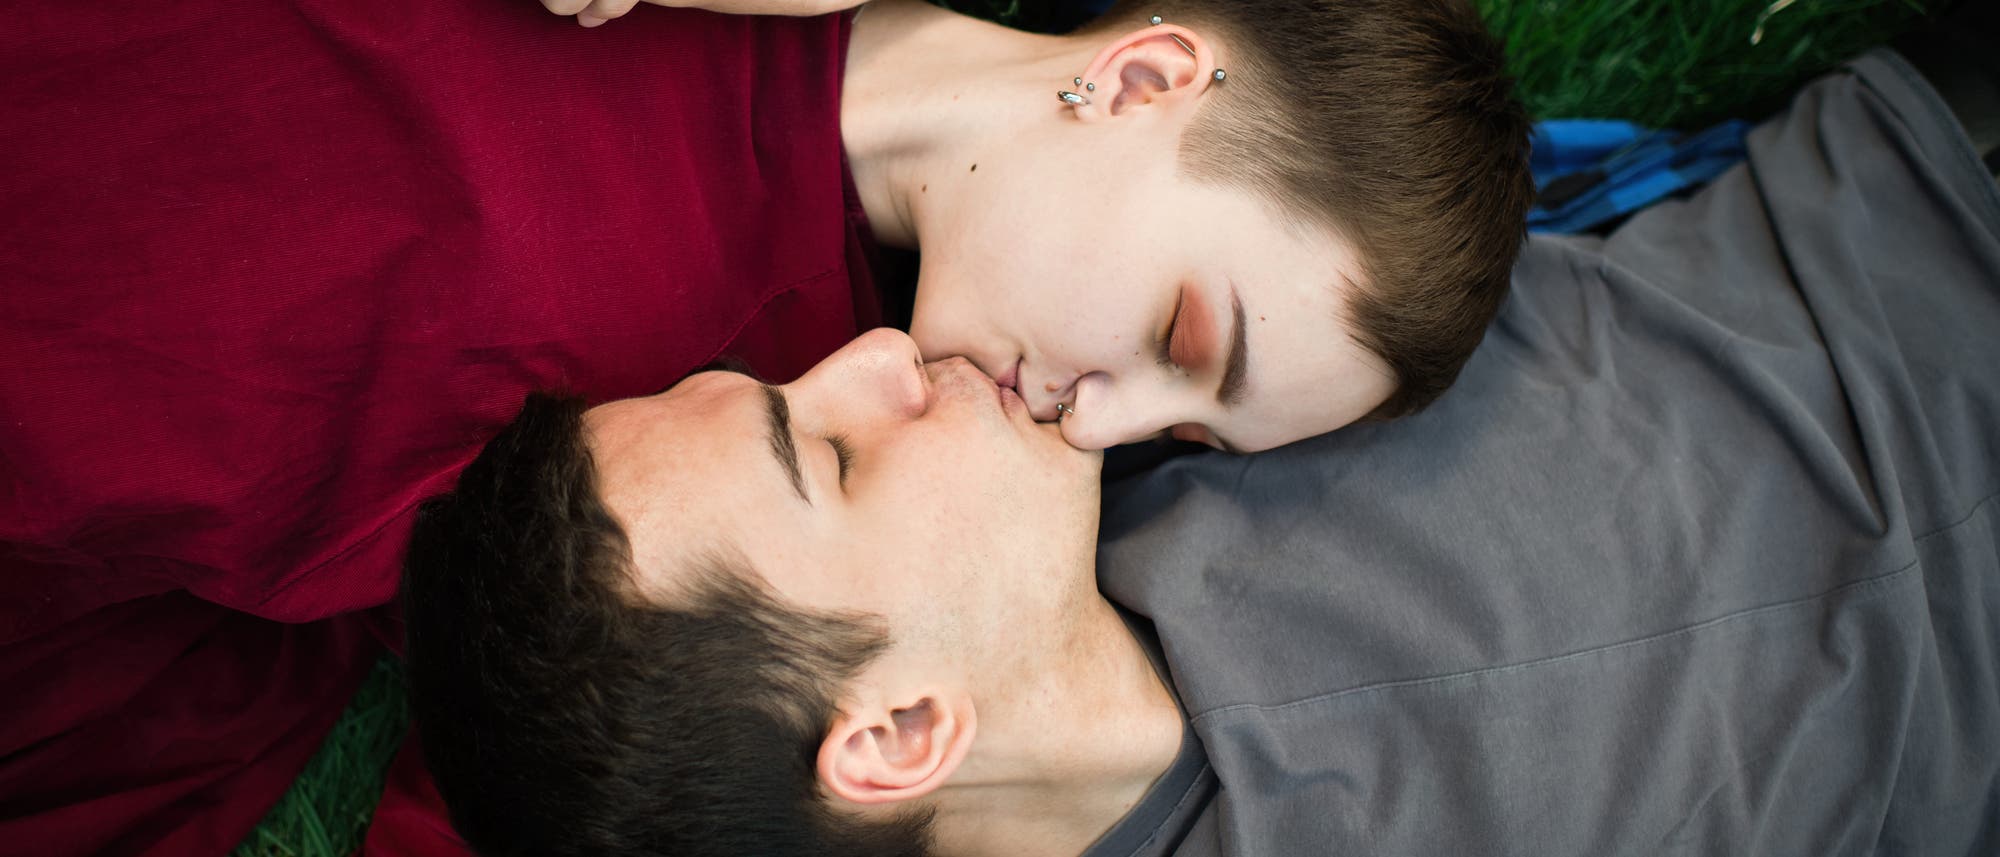 Mädchen und Junge im Teenageralter liegen auf einer Wiese und küssen sich  